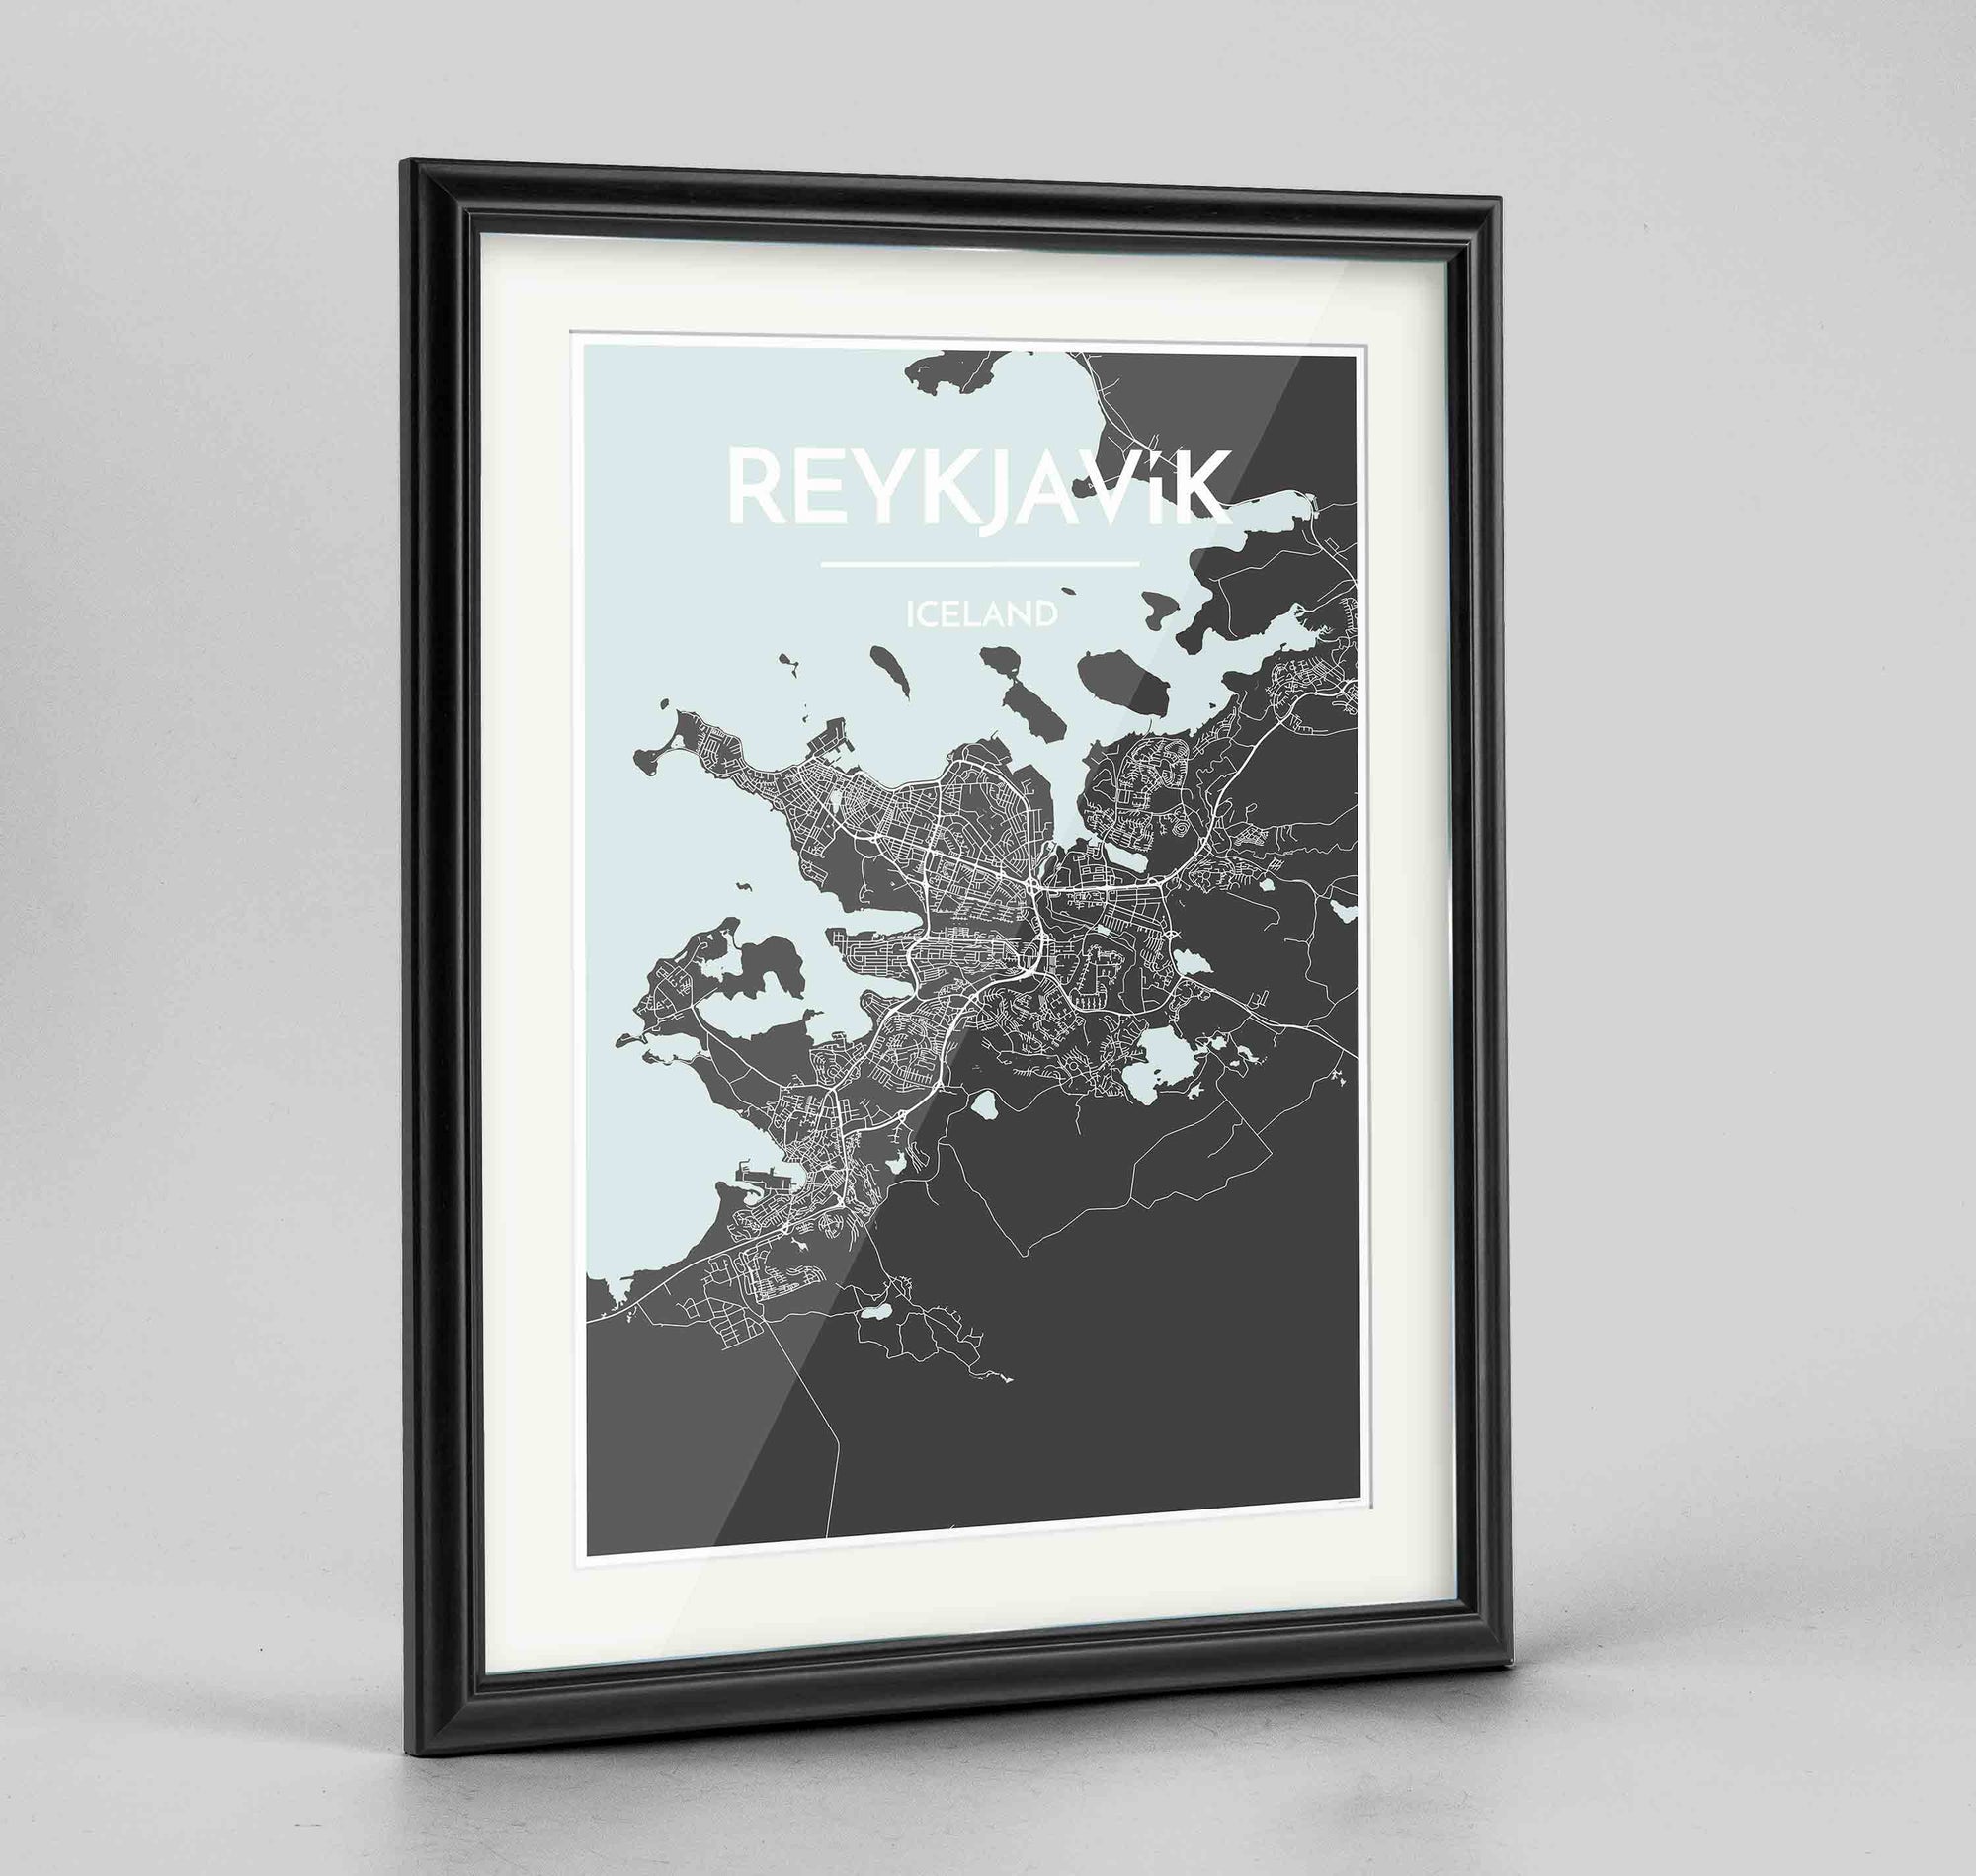 Framed Reykjavik Map Art Print 24x36" Traditional Black frame Point Two Design Group